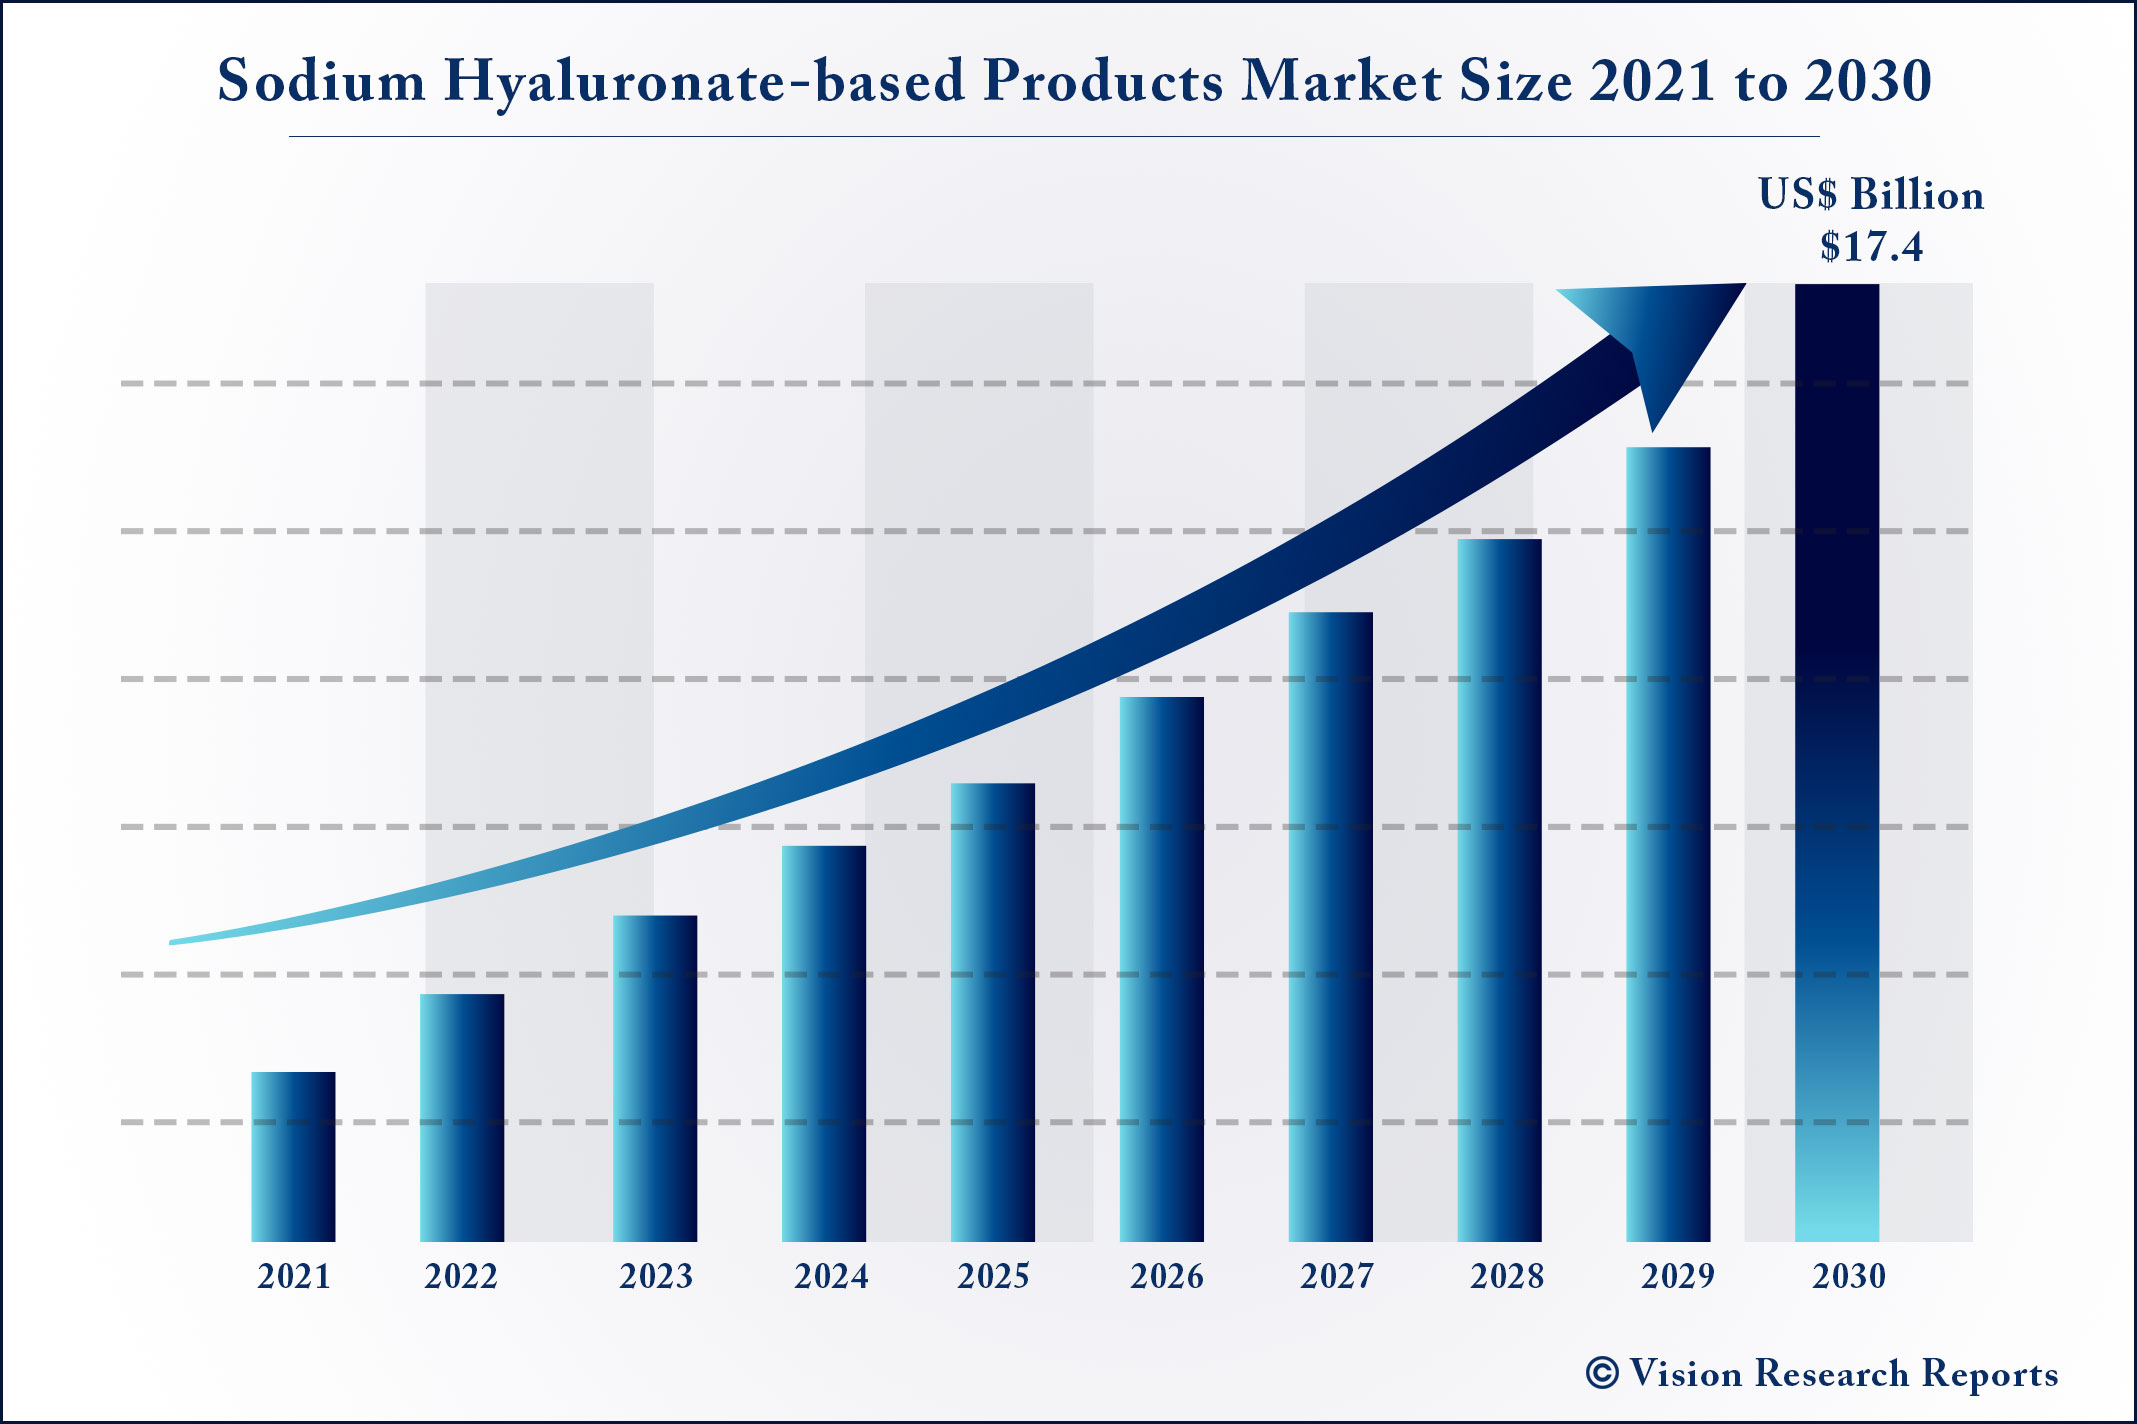 Sodium Hyaluronate-based Products Market Size 2021 to 2030